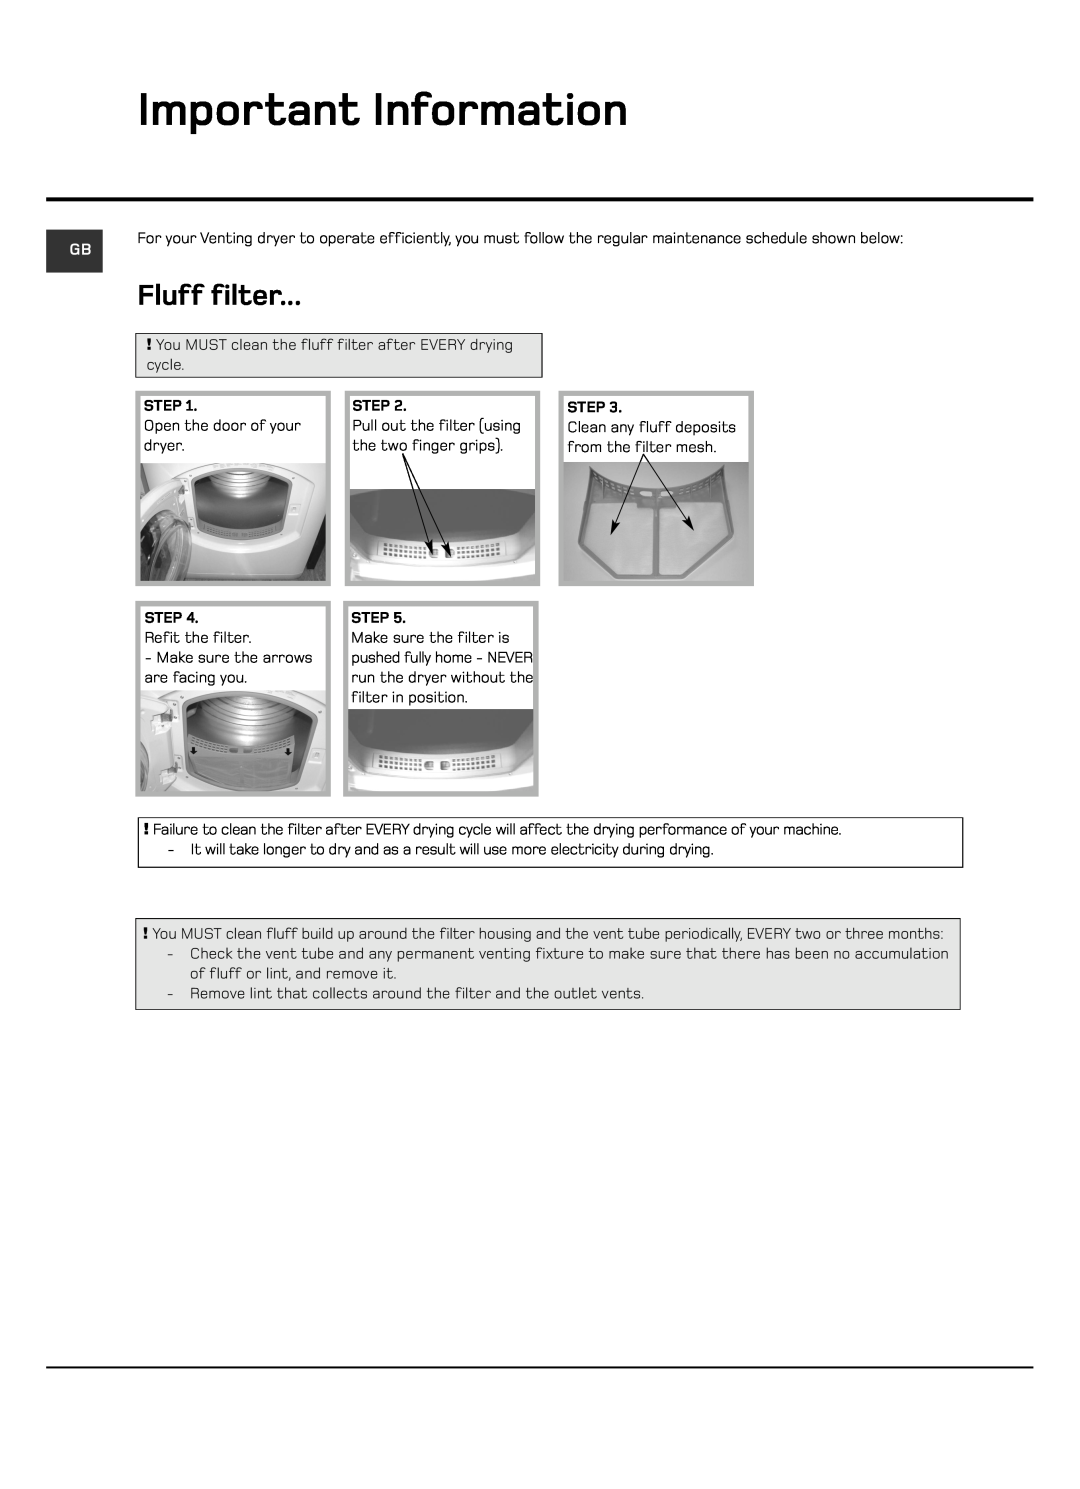 Hotpoint VTD60, VTD65 manual Important Information, Fluff filter 